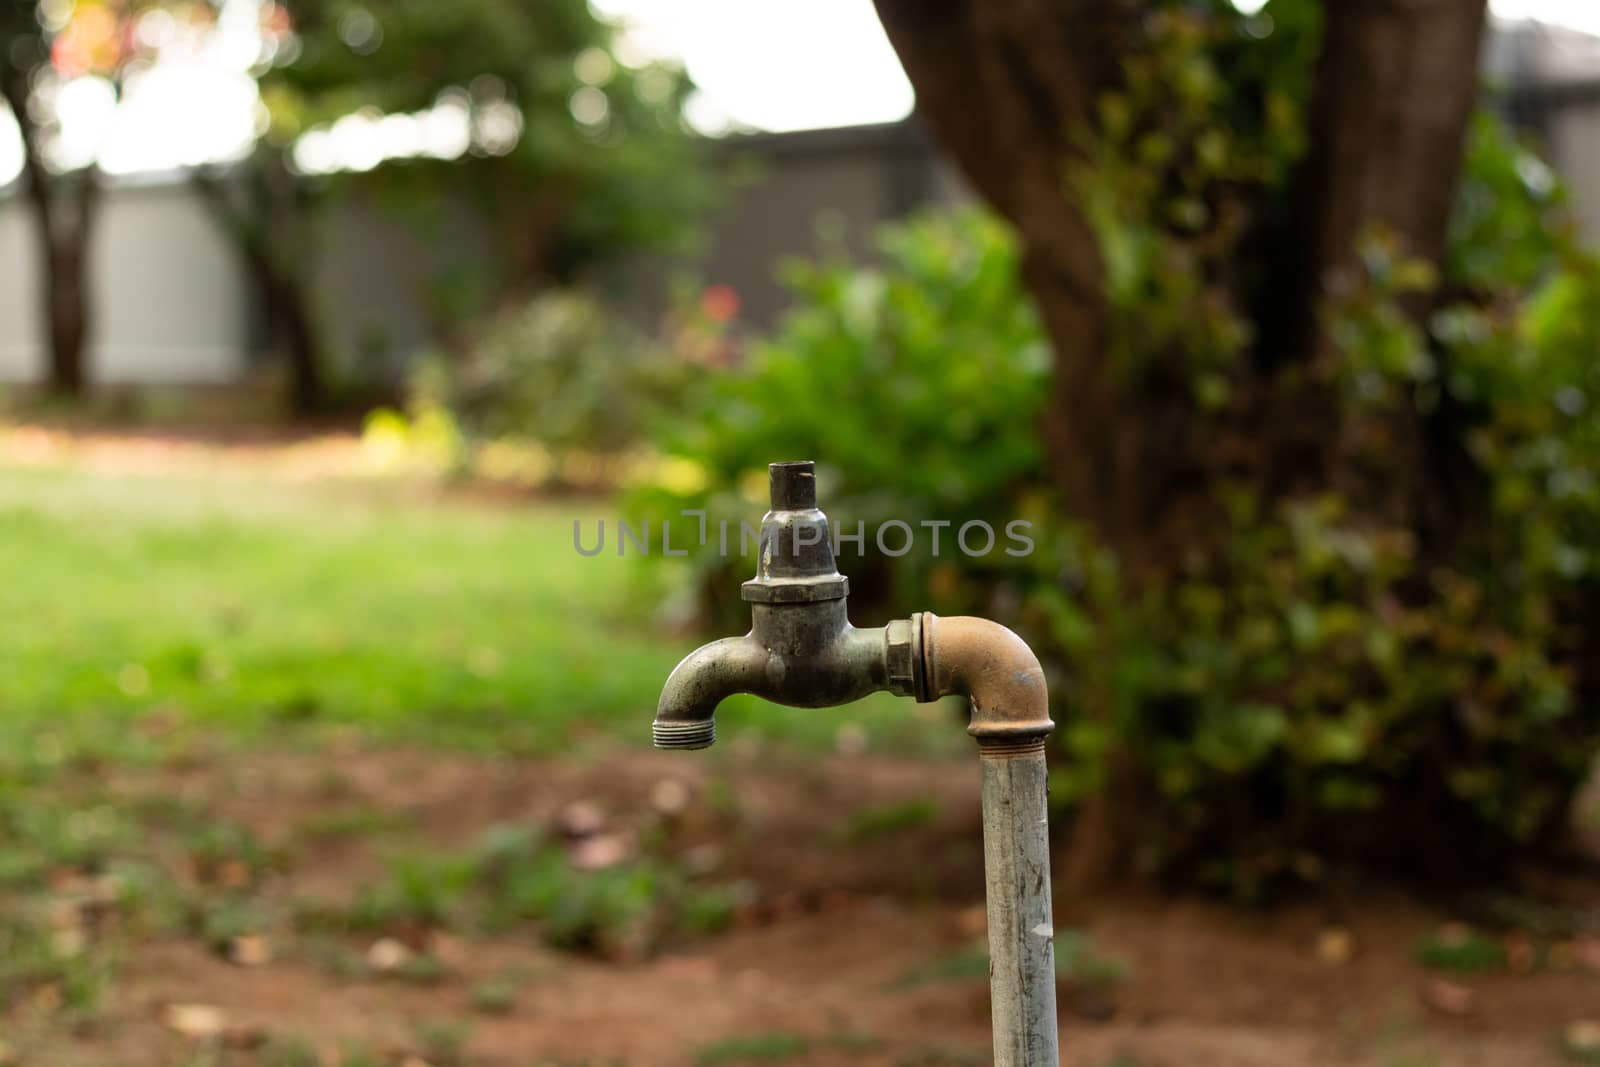 Broken water tap in the garden